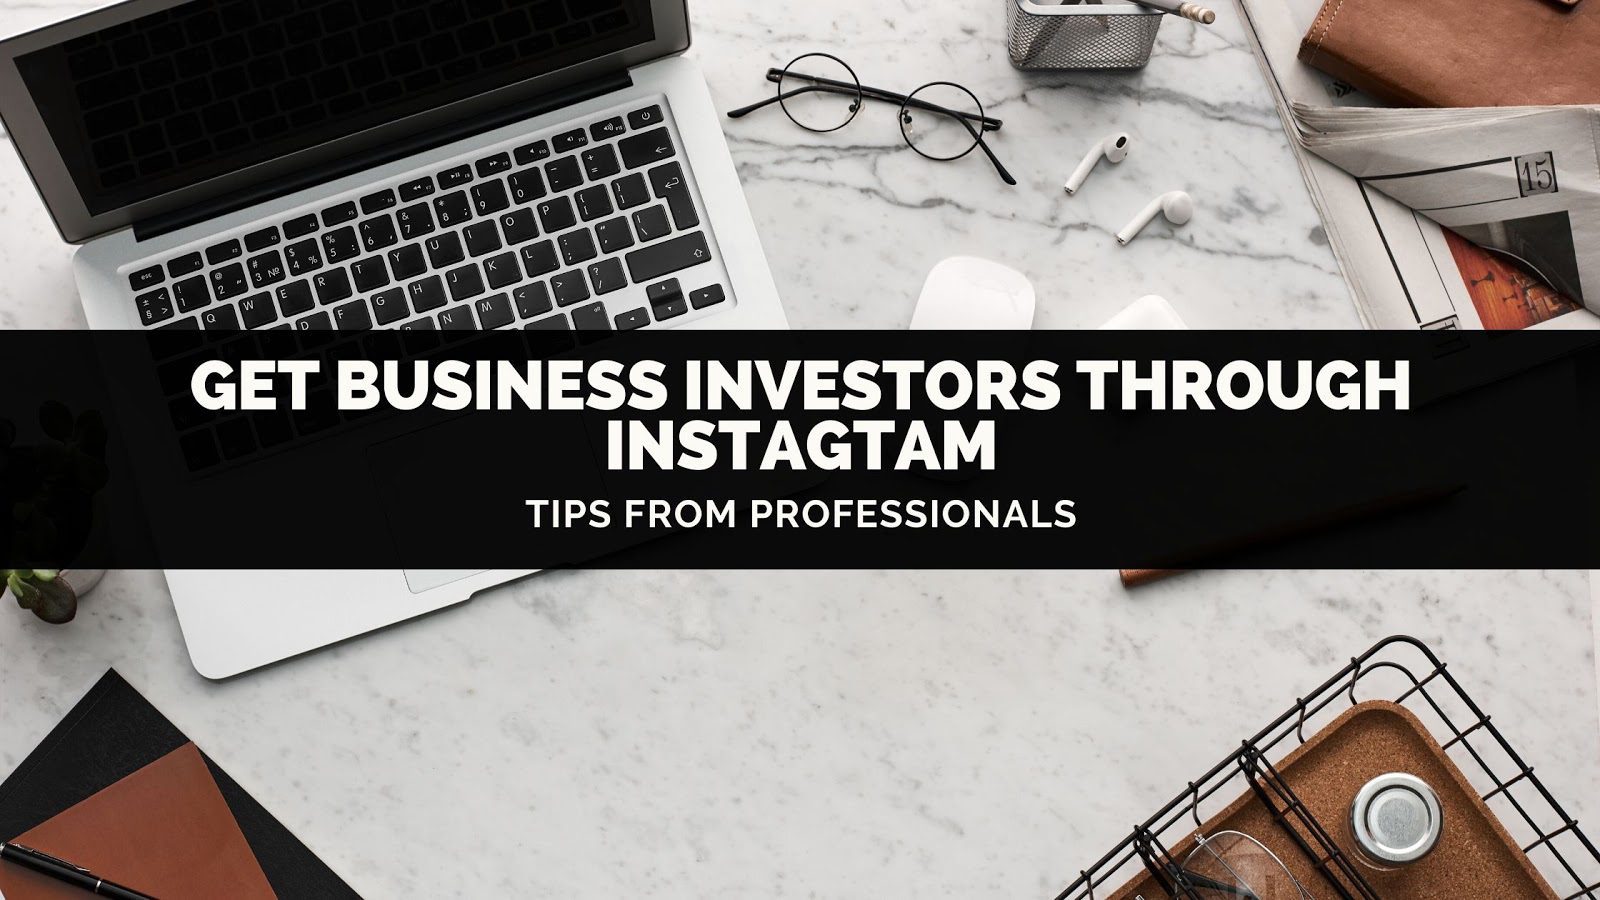 Как привлечь бизнес-инвесторов Instagram?  Знайте эти 4 профессиональных совета